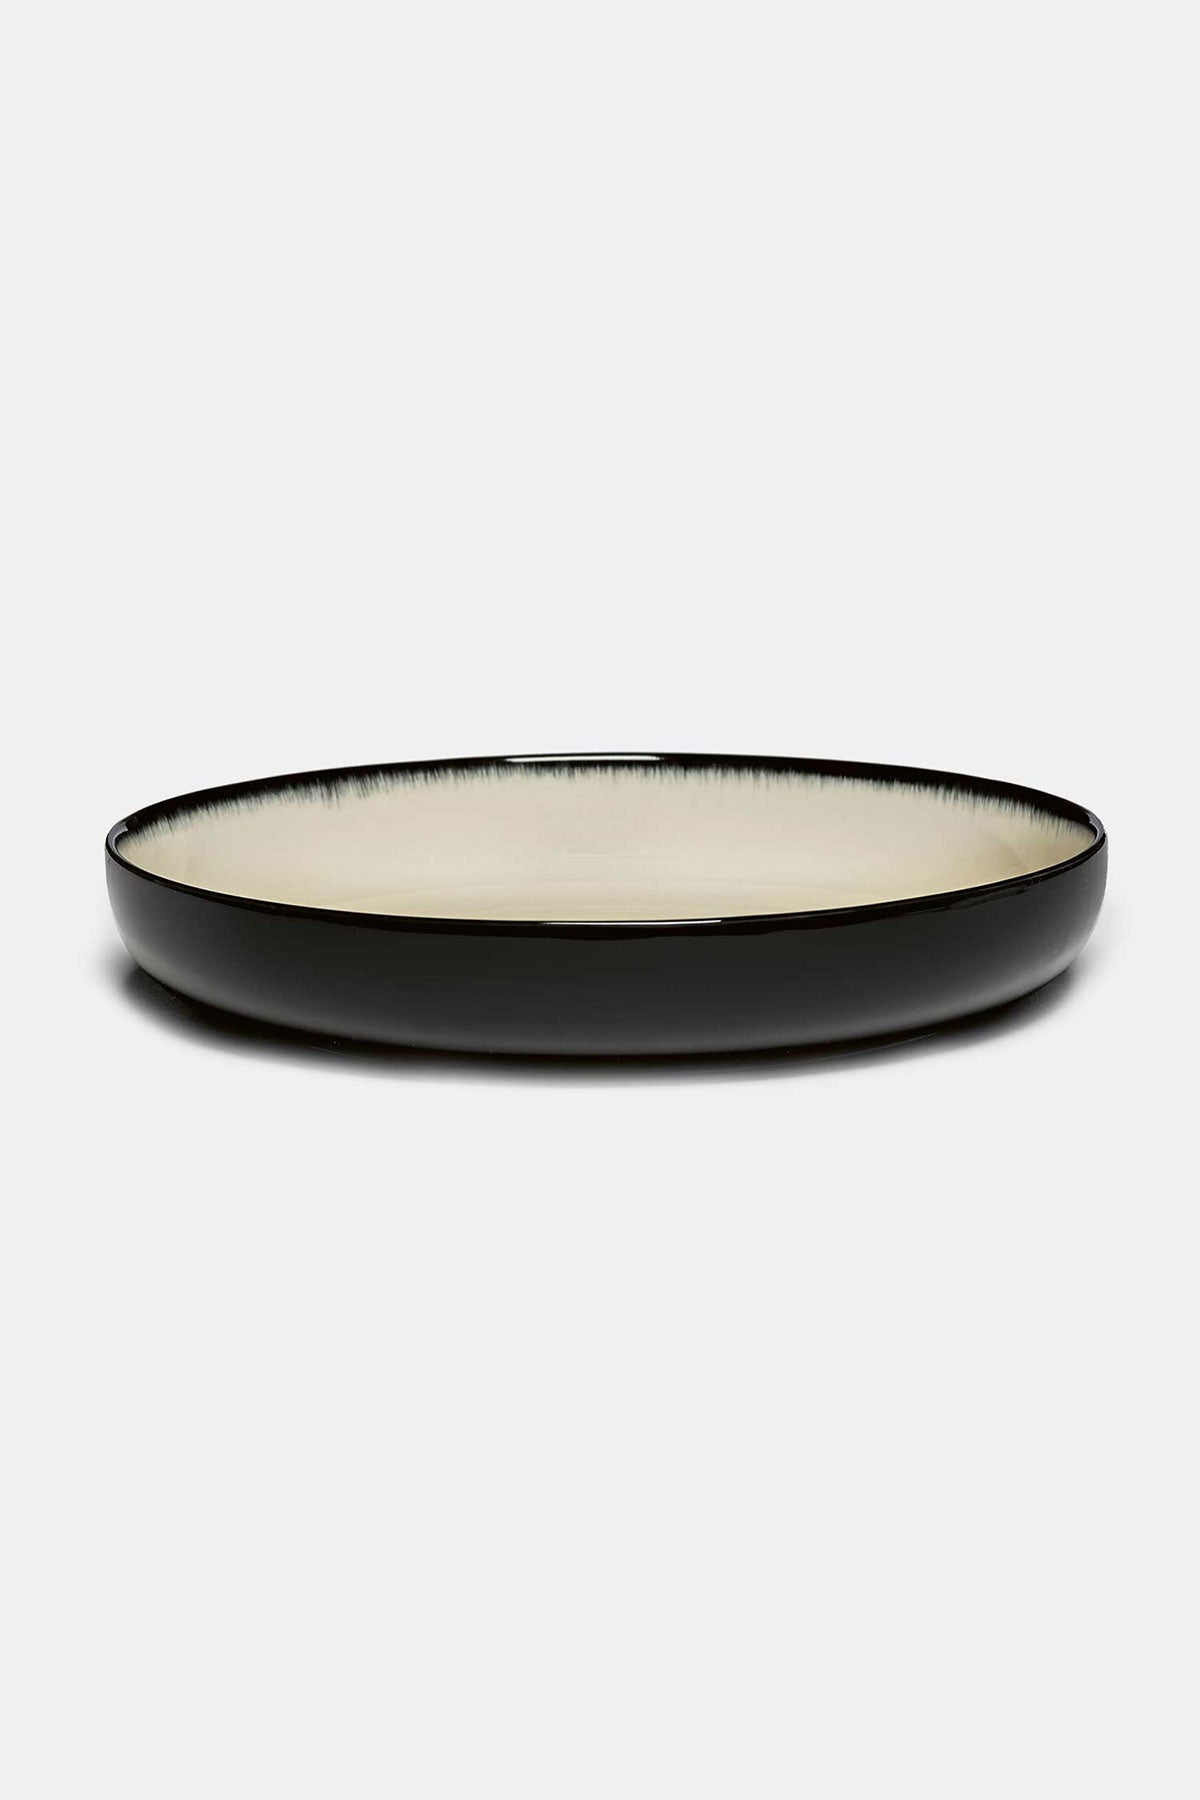 D‚ Porcelain High Plate (Var. A) - D:24cm (2x)